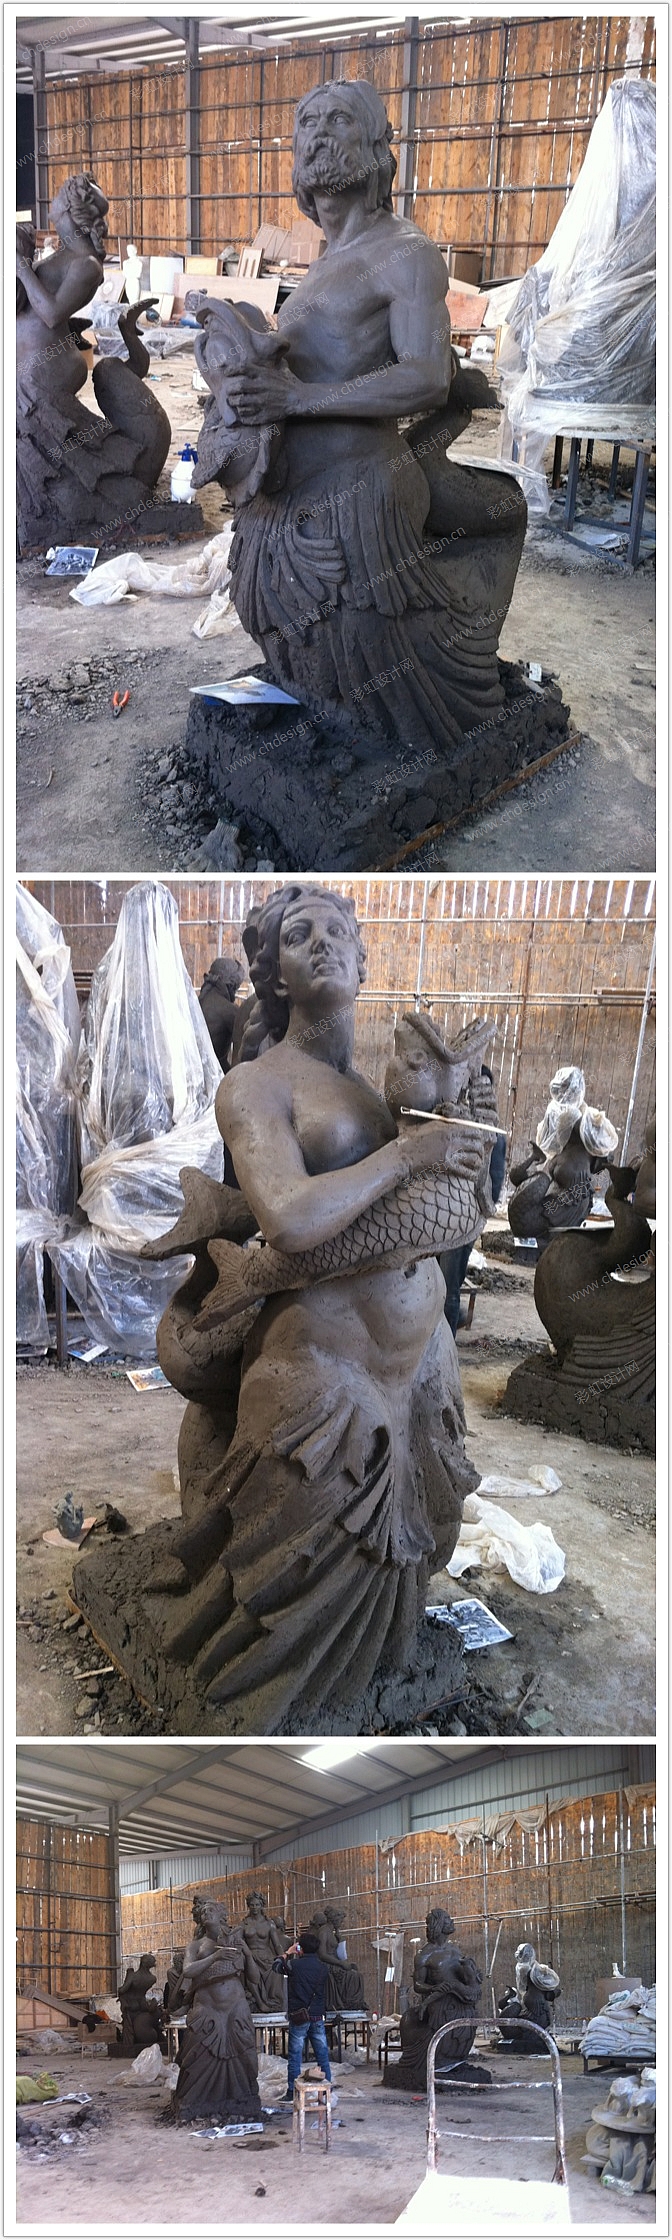 工艺品设计海神雕塑